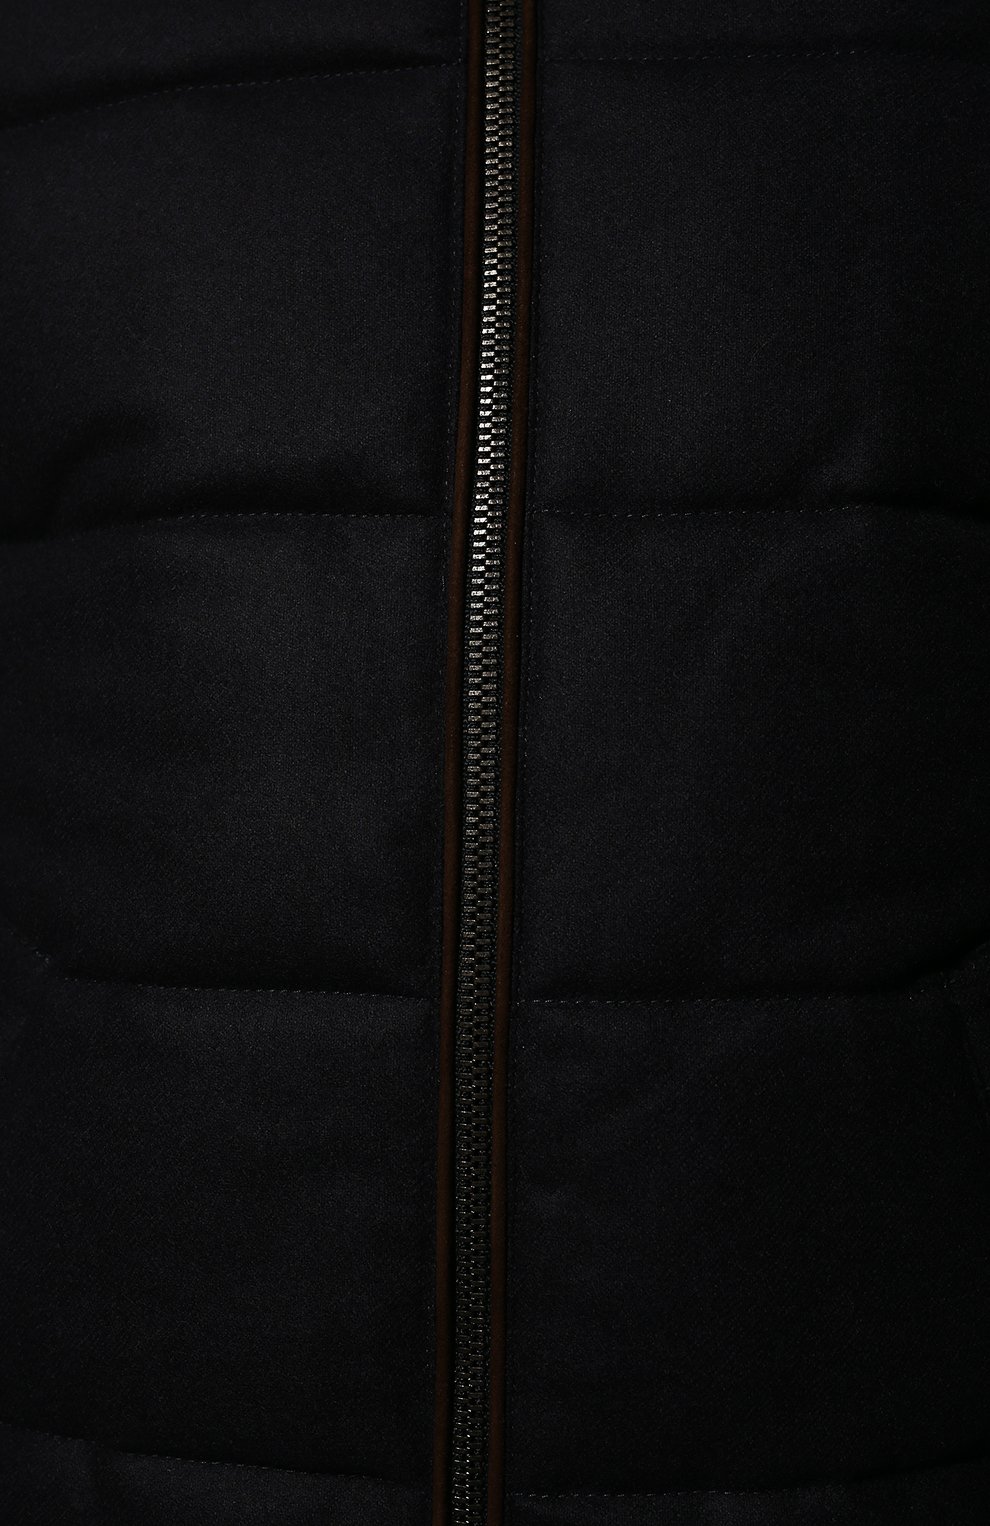 Мужской утепленный бомбер WATERVILLE темно-синего цвета, арт. AL0/662 P | Фото 5 (Кросс-КТ: Куртка; Материал внешний: Шерсть; Рукава: Длинные; Принт: Без принта; Мужское Кросс-КТ: утепленные куртки; Длина (верхняя одежда): Короткие; Материал подклада: Хлопок; Стили: Кэжуэл)